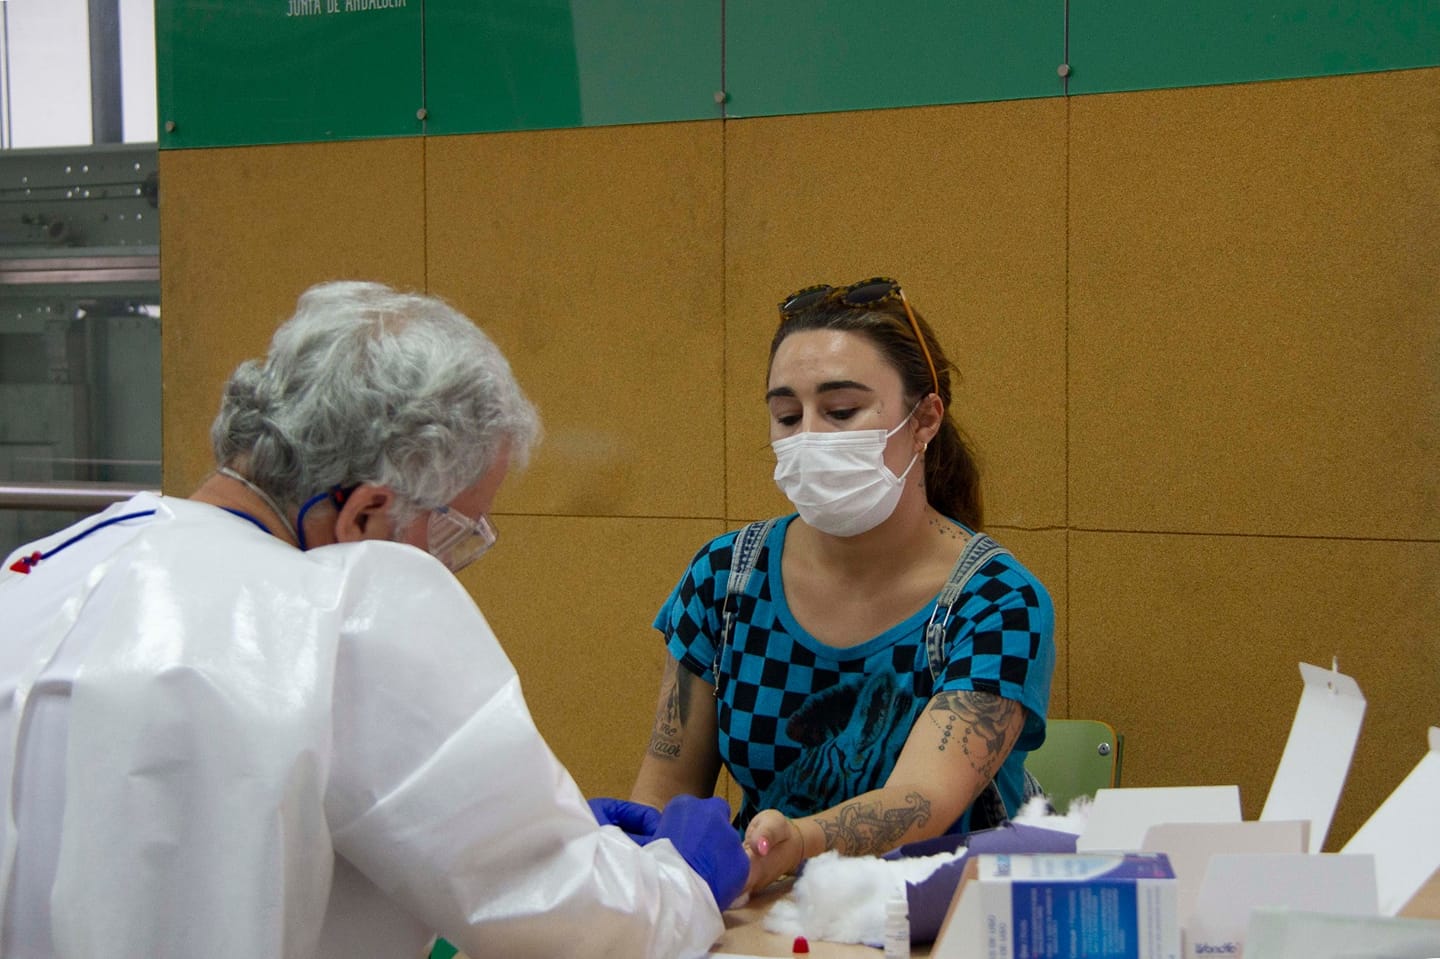 Prueba de coronavirus a una empleada de la ayuda a domicilio en Arcos, semanas atrás. FOTO: JUNTA